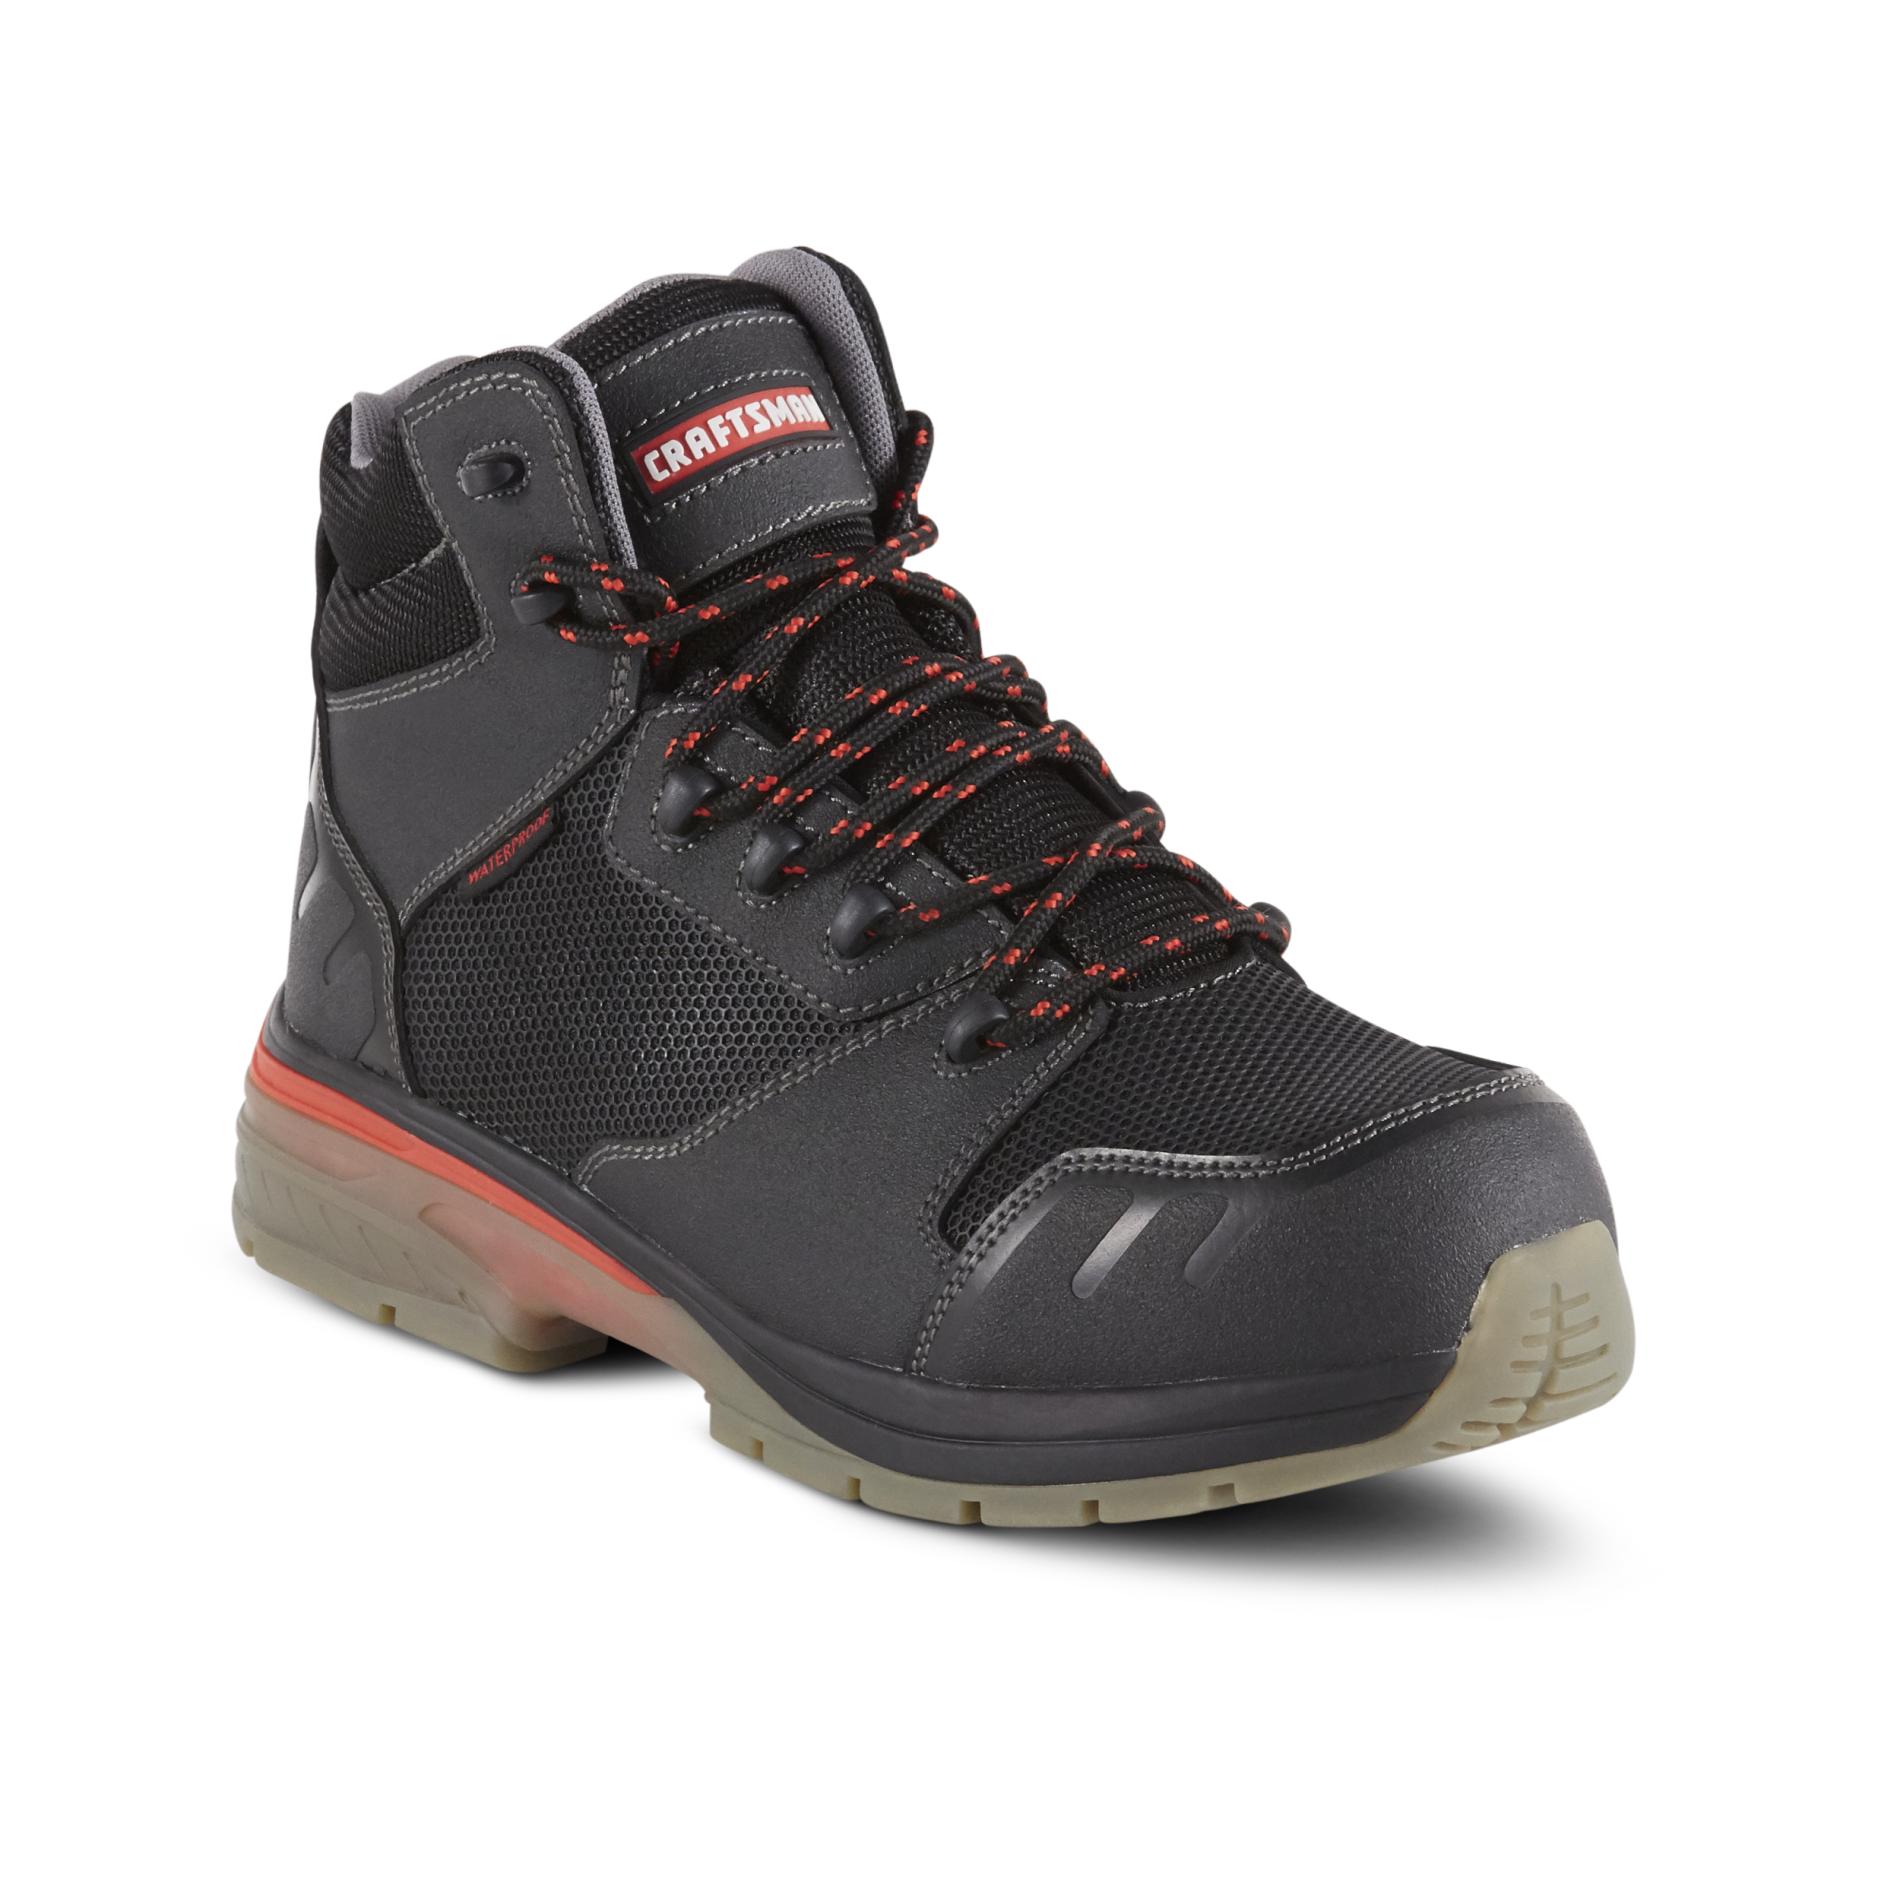 Craftsman Men's Jefferson Waterproof Work Boot - Black/Gray | Shop Your ...